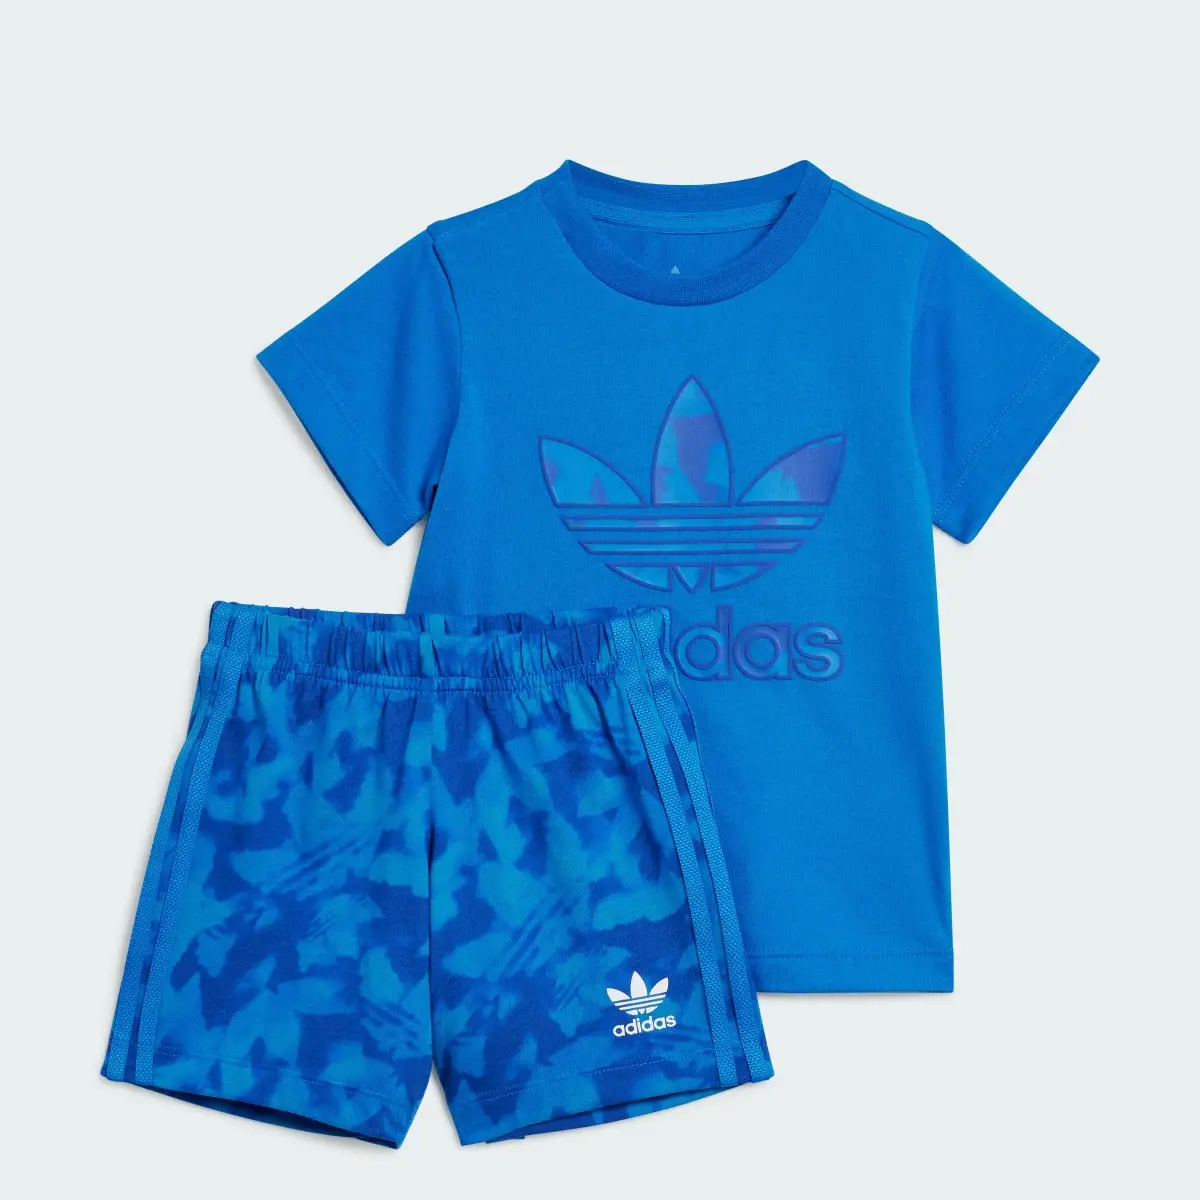 Adidas Summer Allover Print Short Tee Set. 1